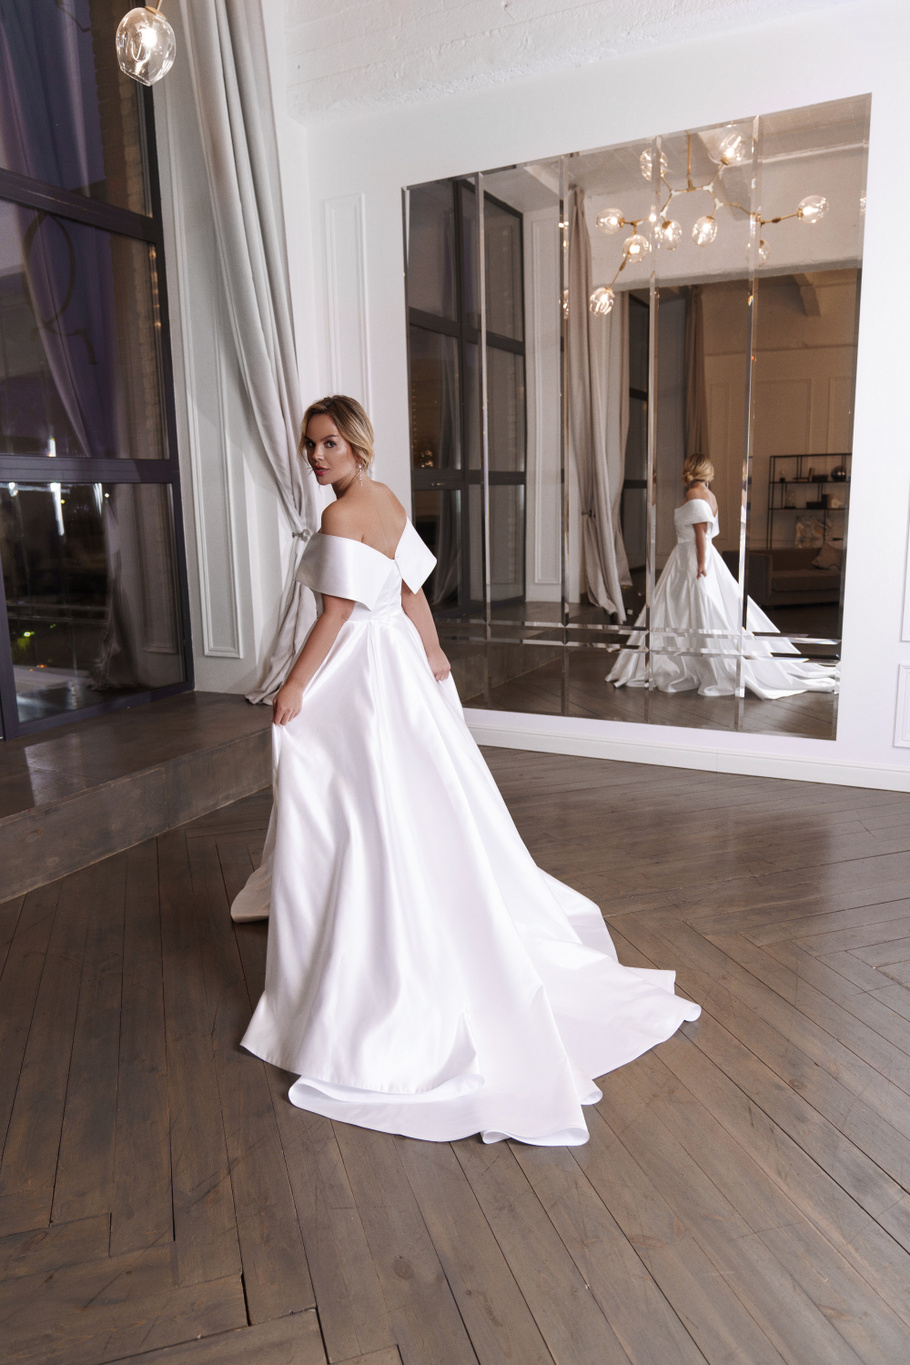 Свадебное платье «Ивон плюс сайз» Марта — купить в Москве платье Ивон из коллекции 2019 года